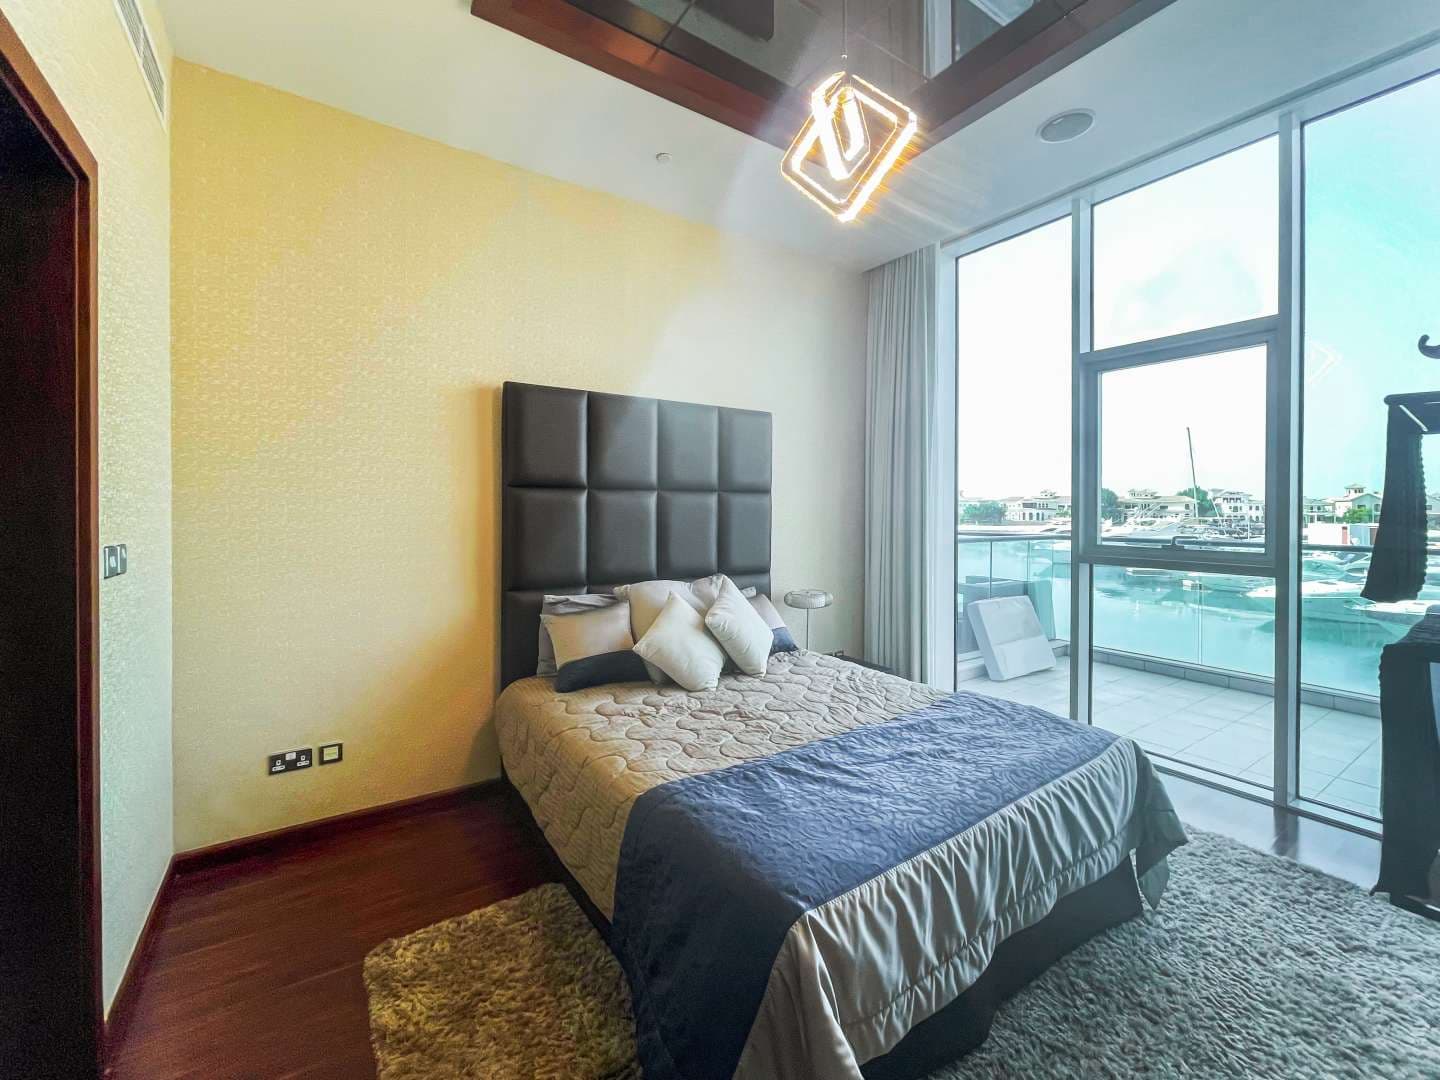 2 Bedroom Apartment For Rent Oceana Pacific Lp10721 21a189c091d3f000.jpg